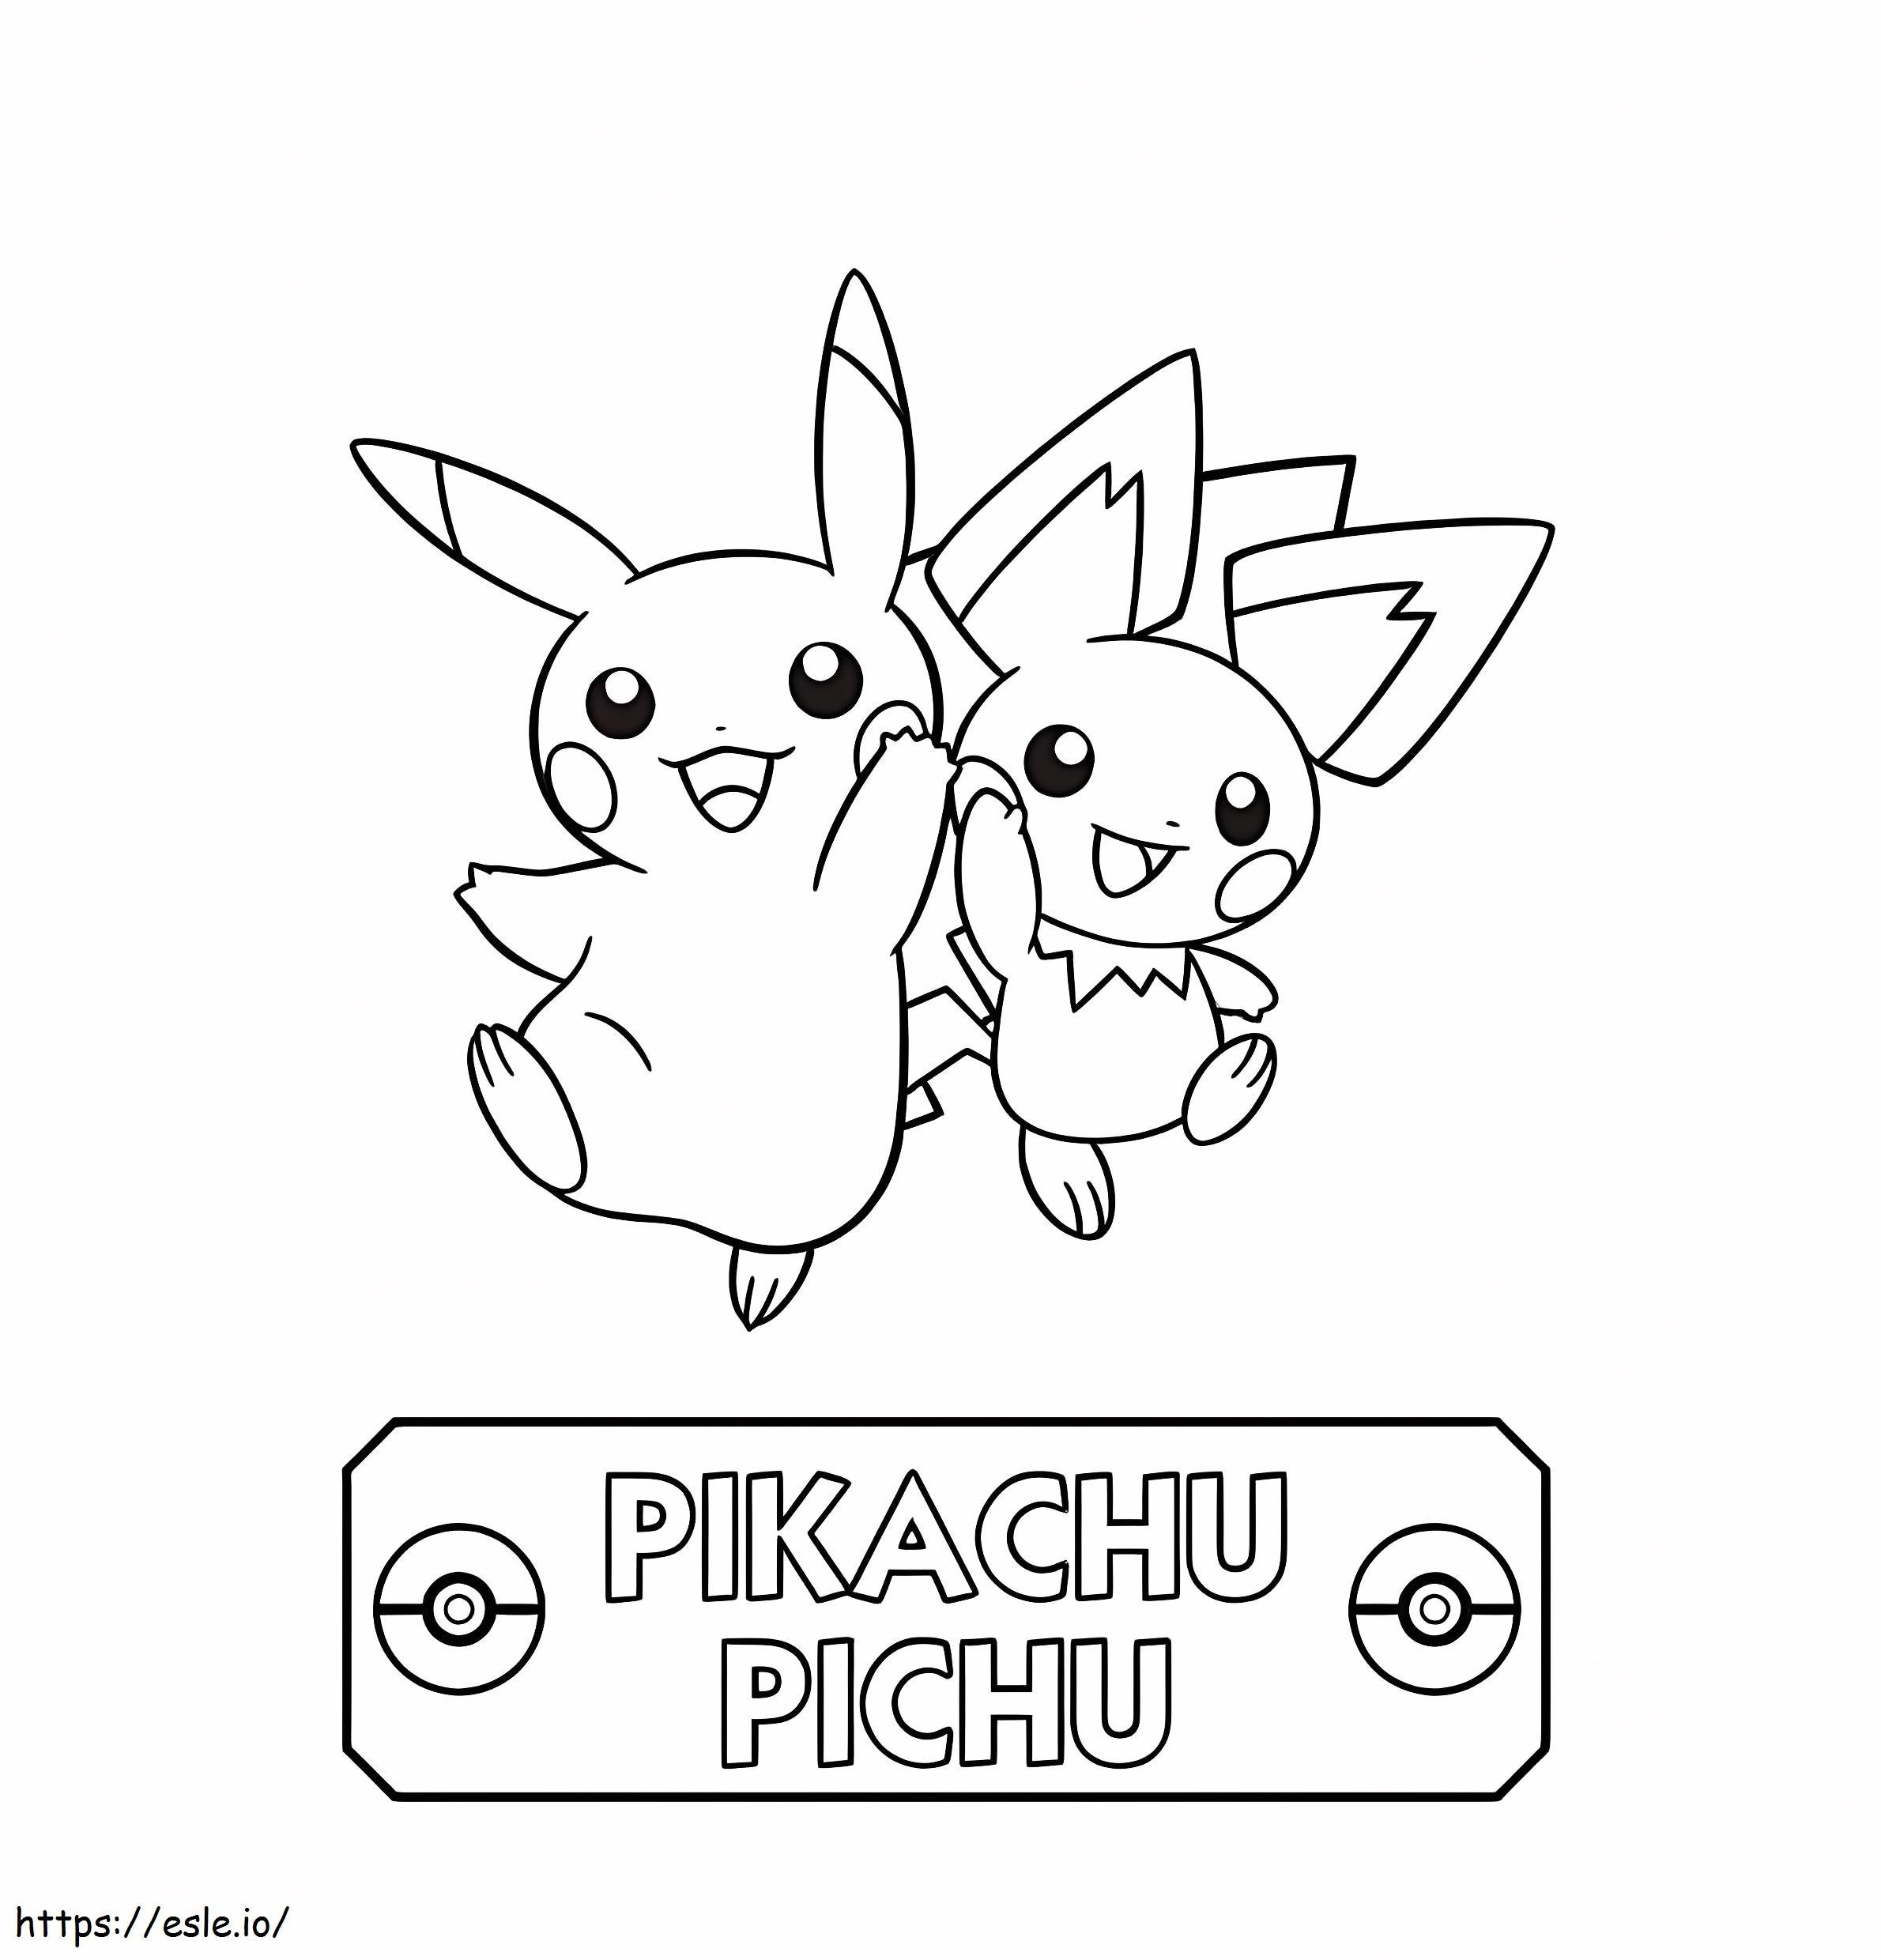 Pichu și Pikachu sărind de colorat